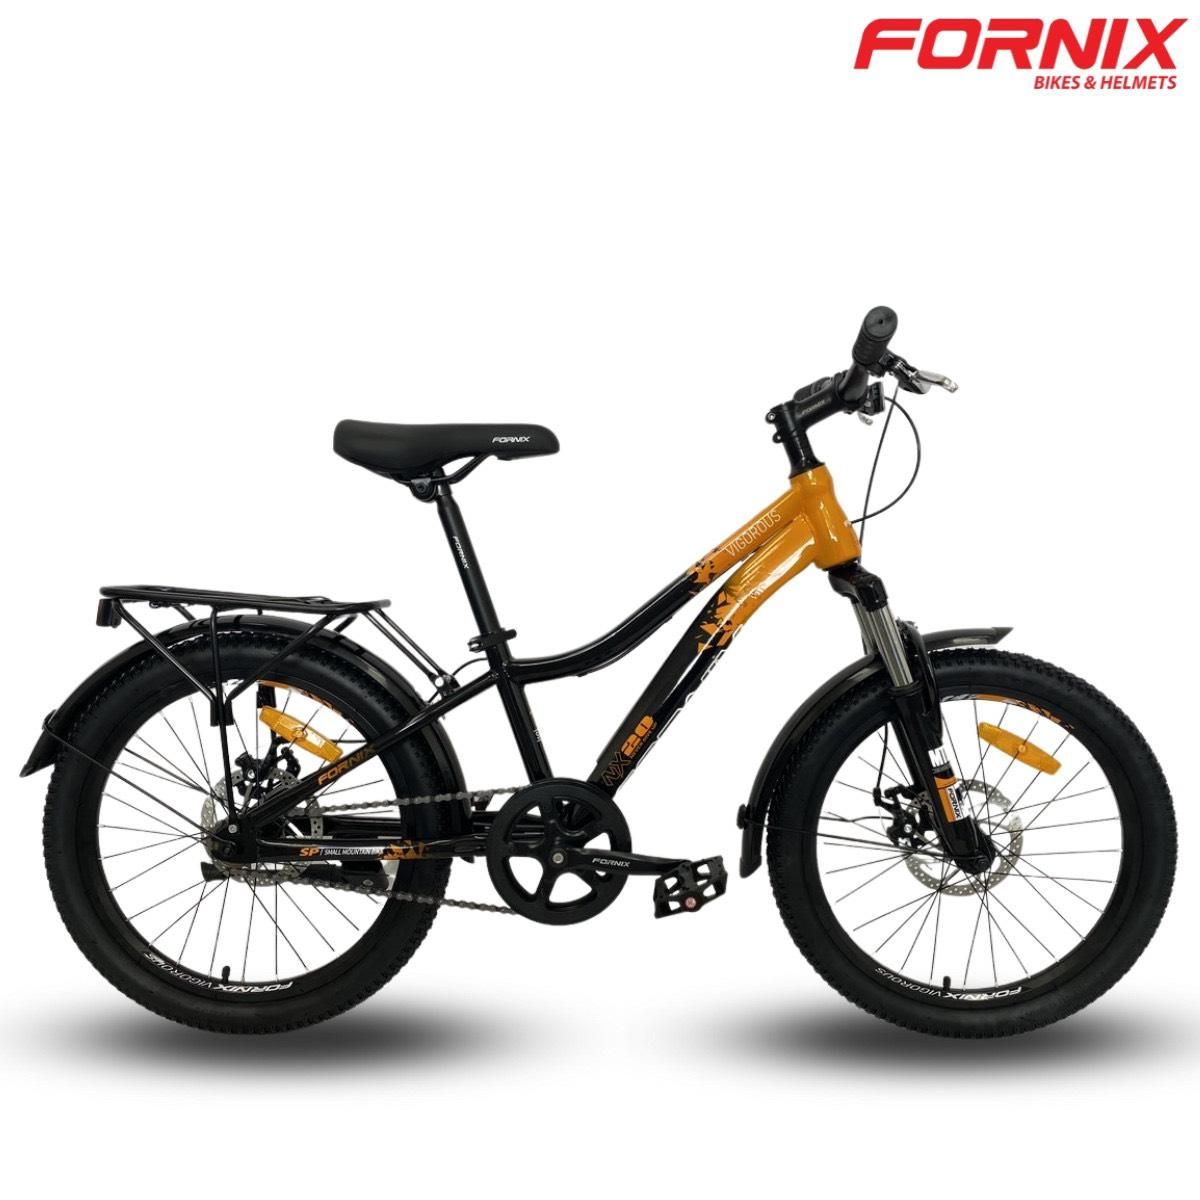  [CHÍNH HÃNG] Xe đạp trẻ em thể thao Fornix NX20 Plus- Vòng bánh 20"- Bảo hành 12 tháng 